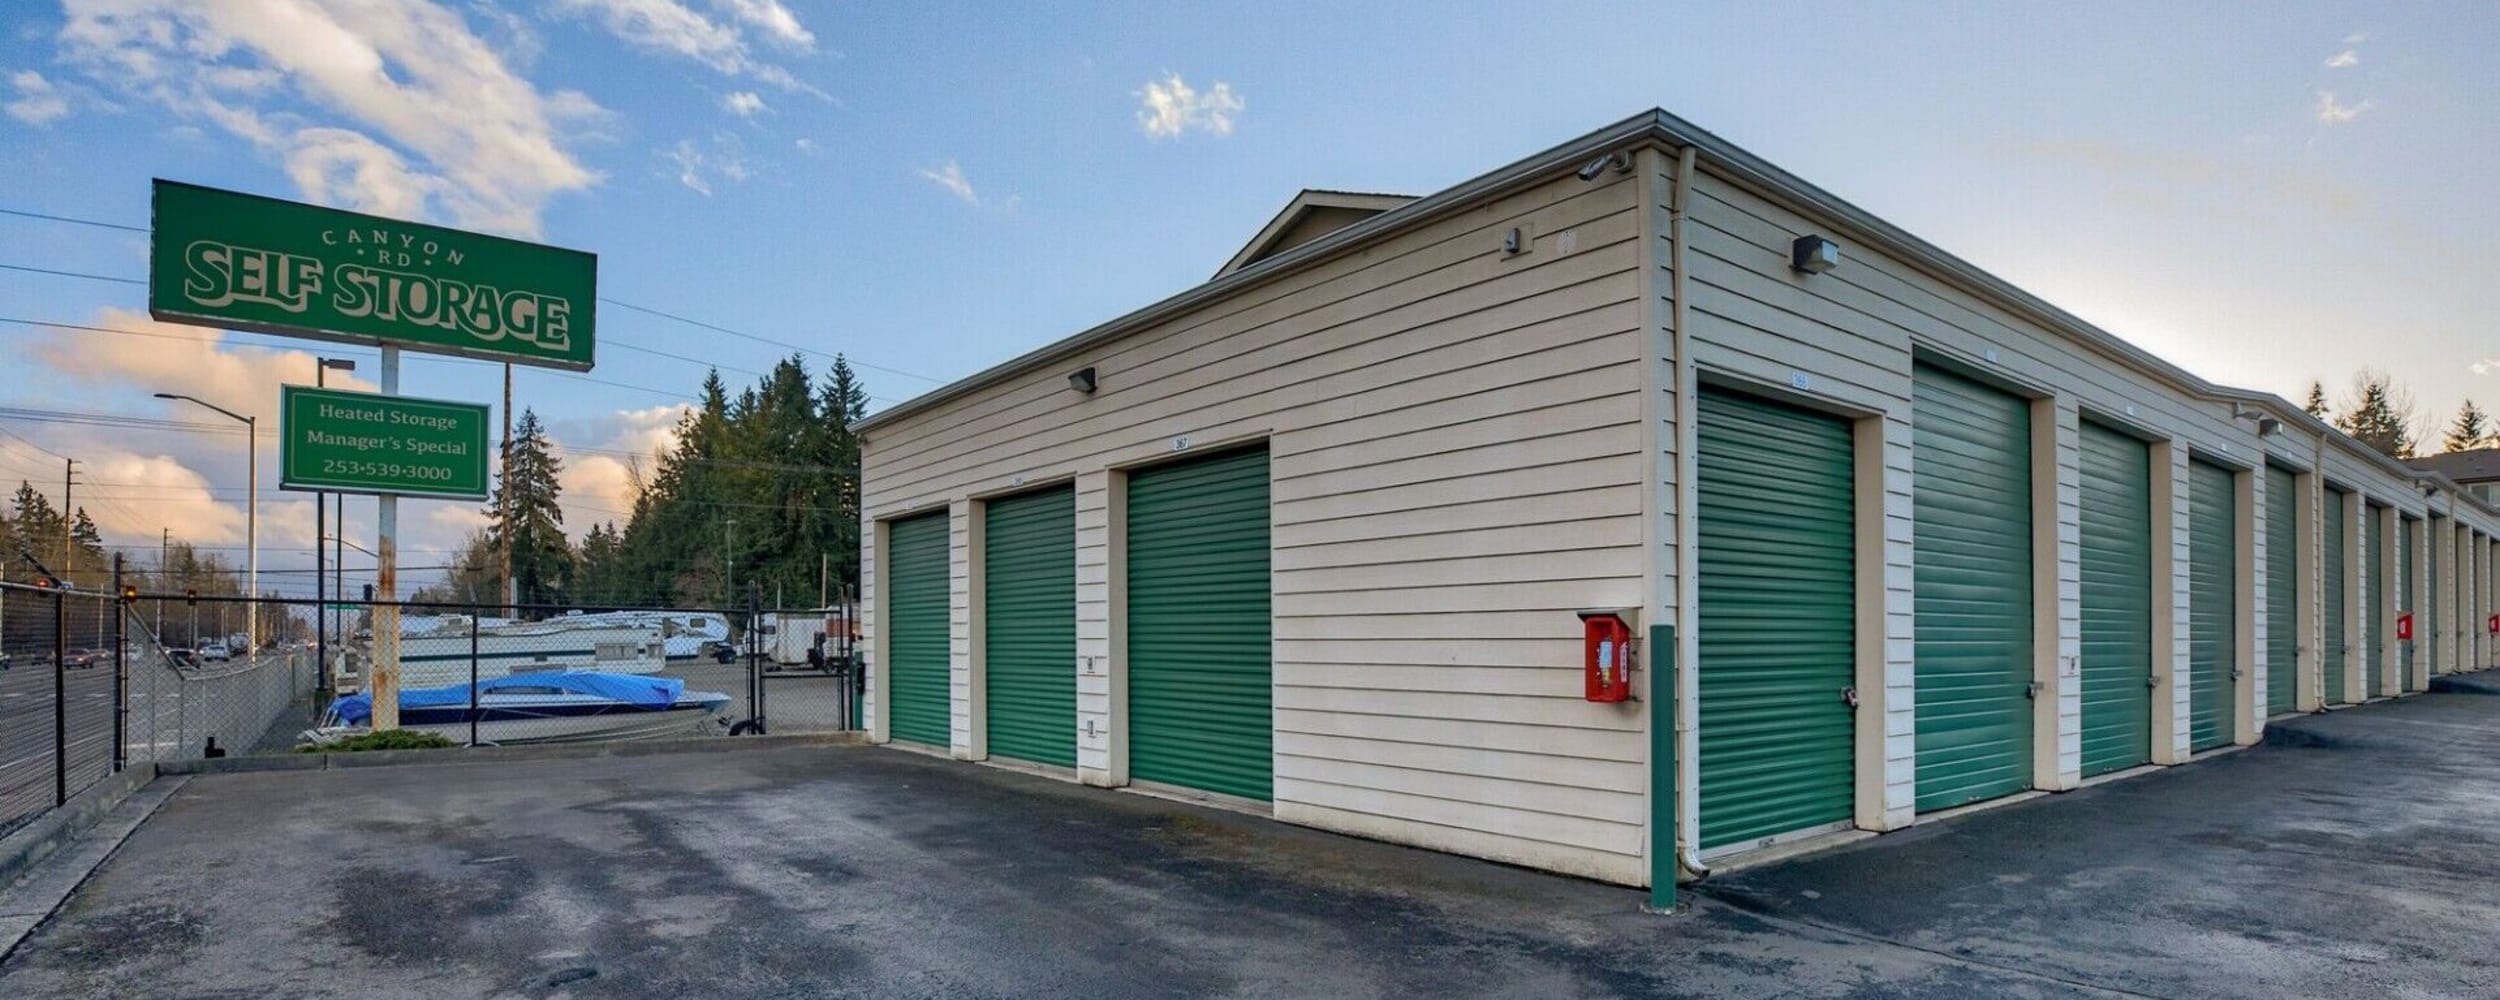 Exterior storage units at Canyon Road Self Storage in Tacoma, Washington